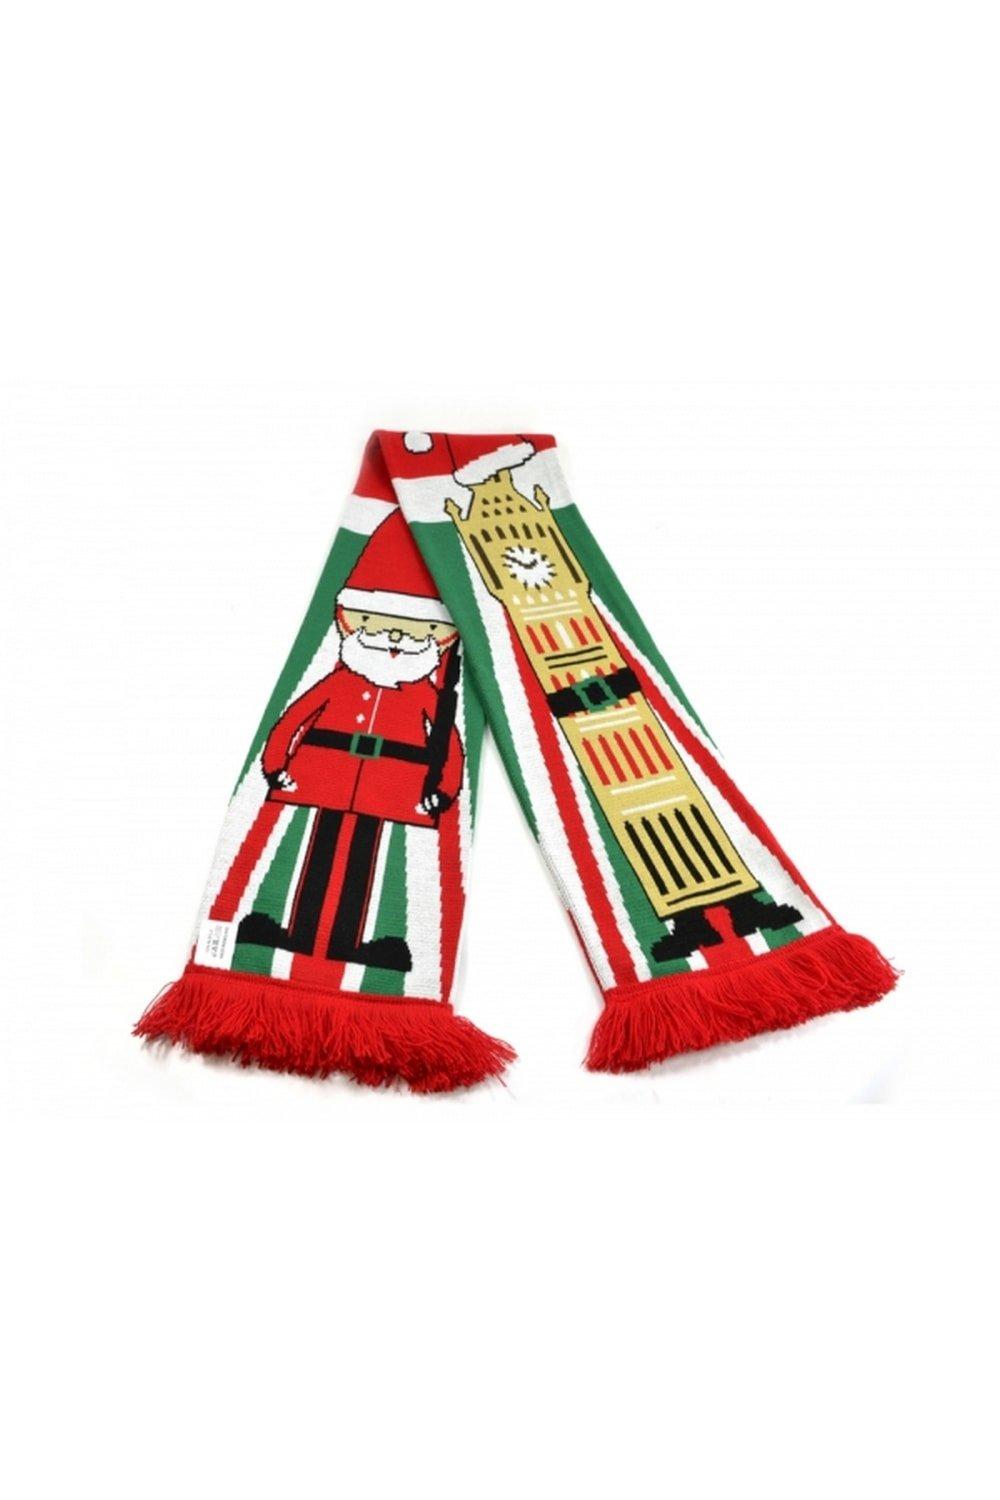 Рождественский шарф Биг-Бен Universal Textiles, мультиколор жаккардовый шарф h